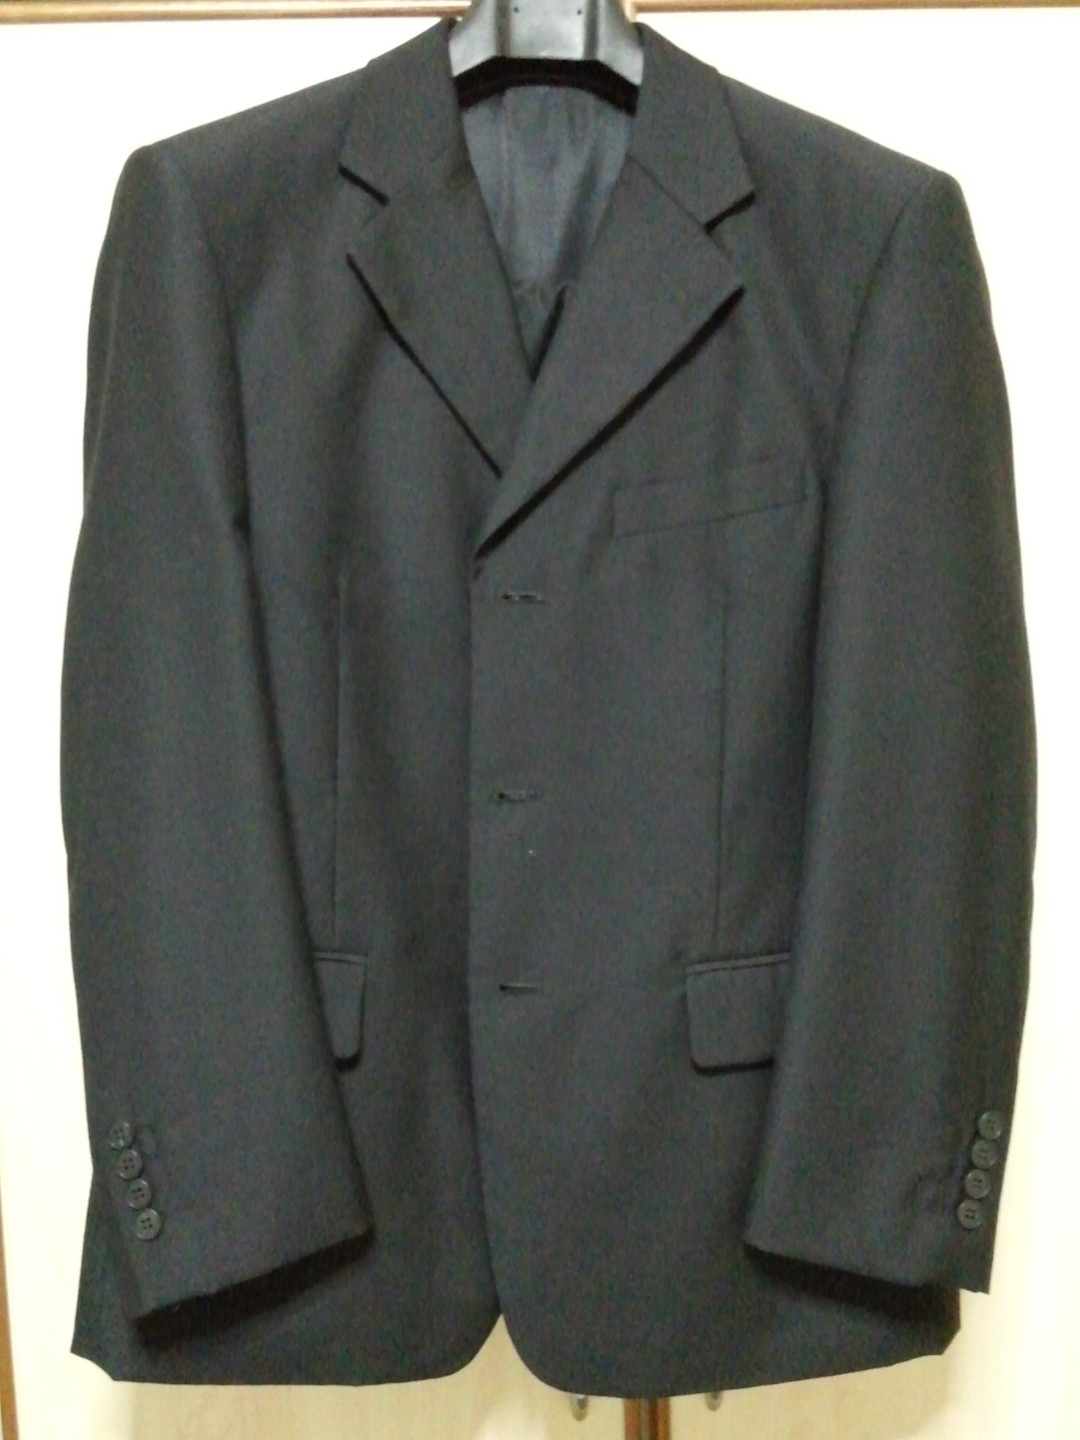 Alain Delon Suit / Blazer, Men's Fashion, Coats, Jackets and Outerwear ...